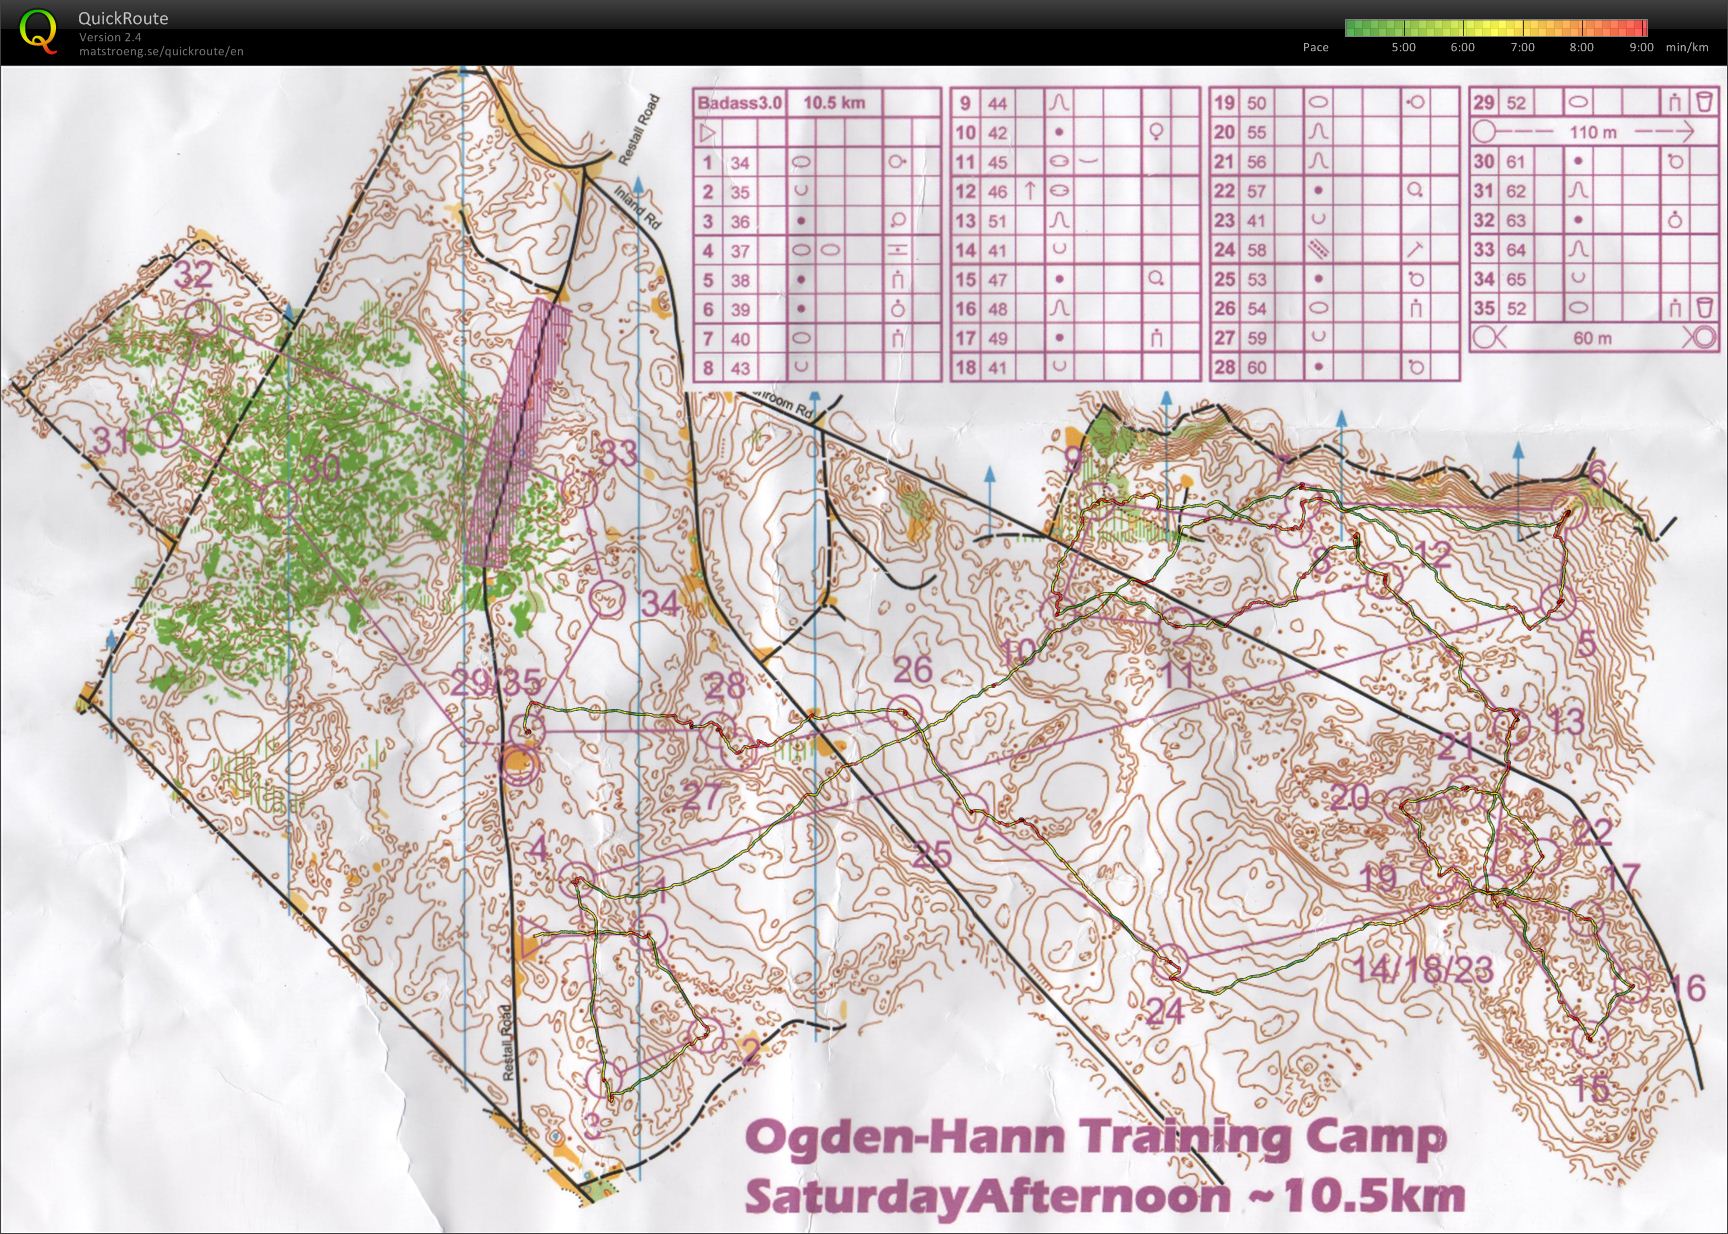 Ogden-Hann Training Camp - Badass 3.0 (2012-03-16)